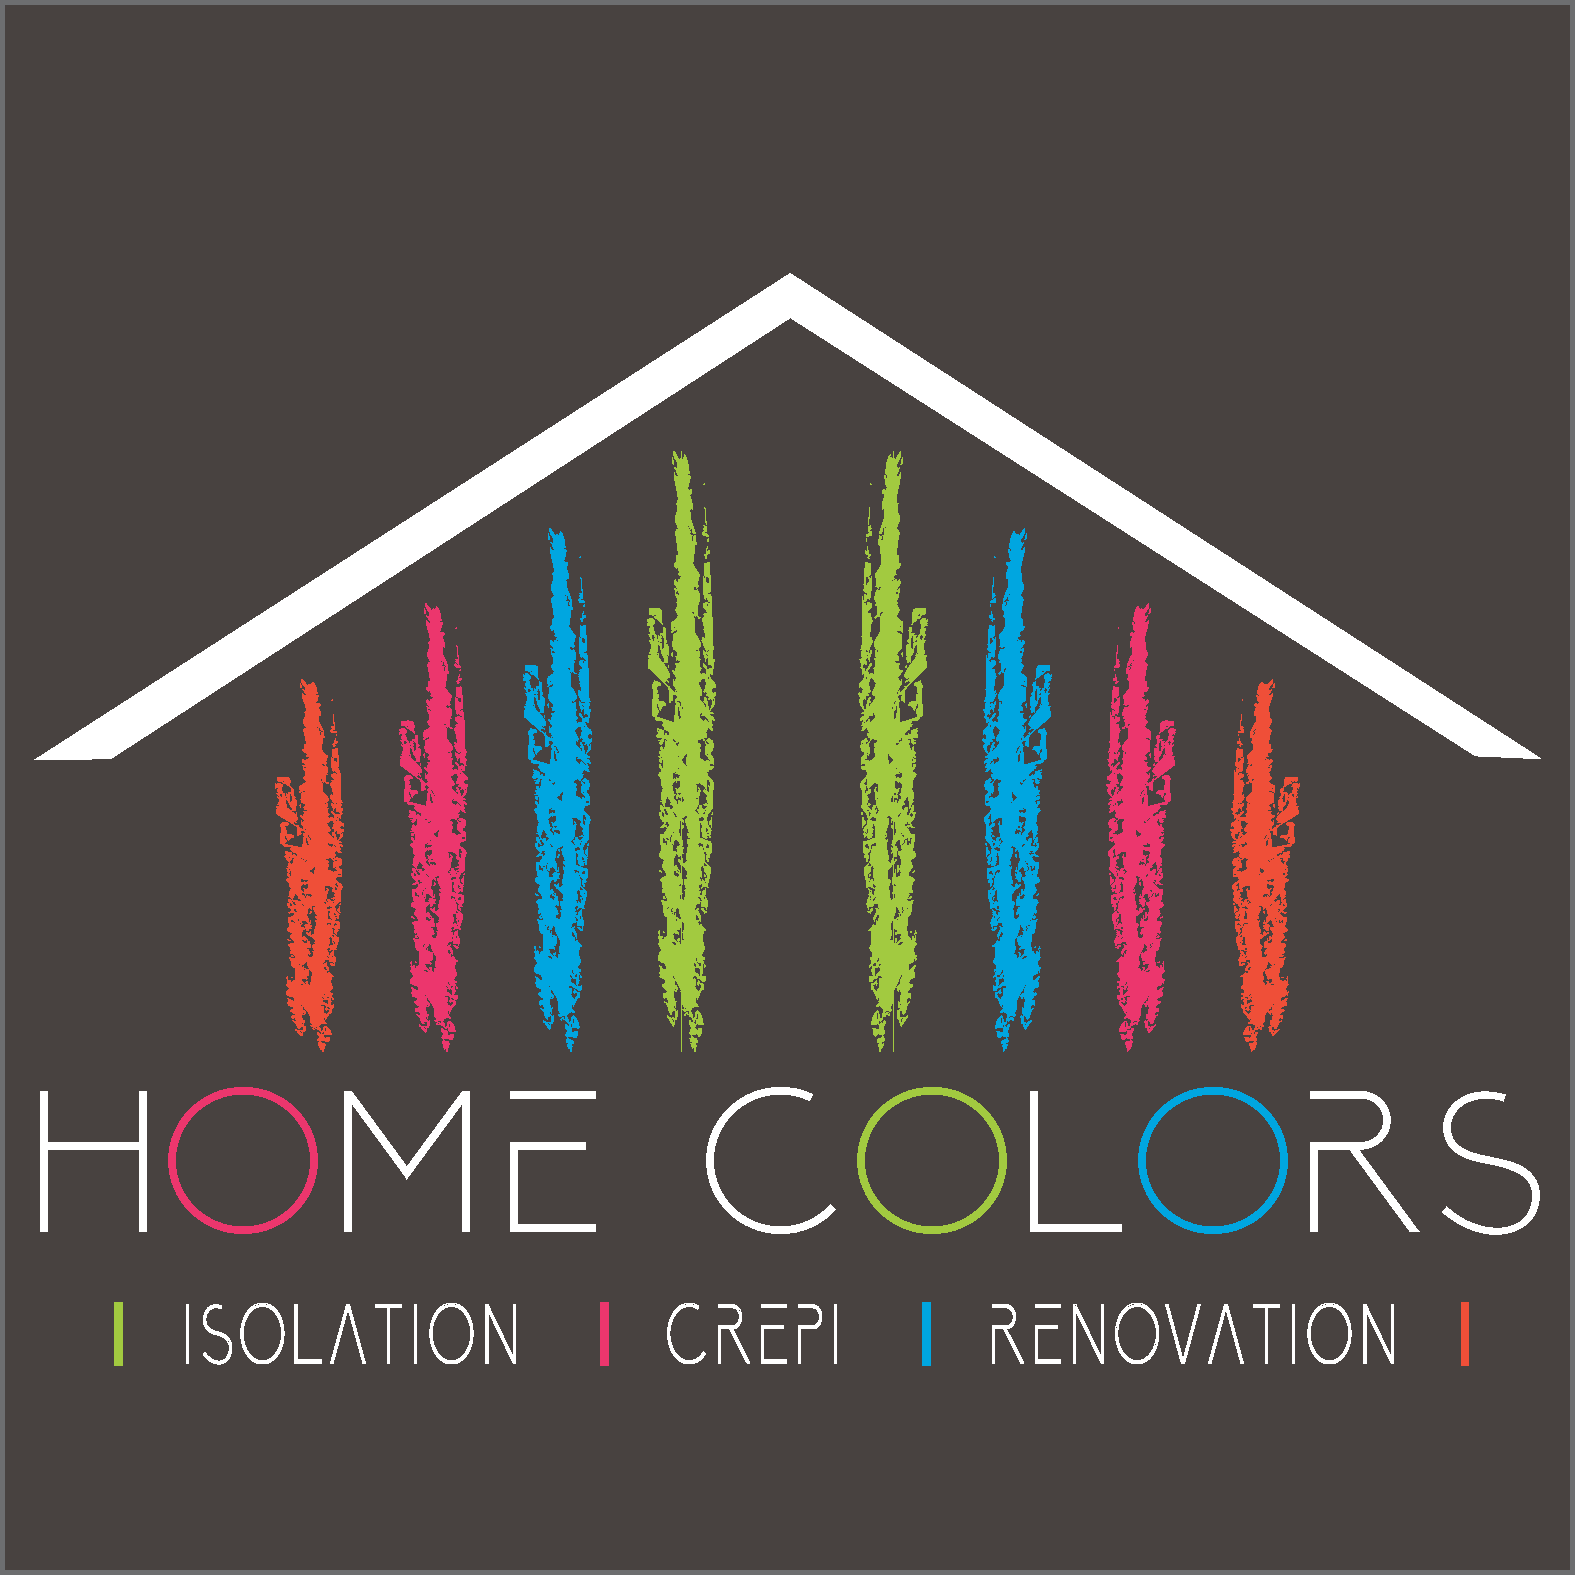 Home Colors | Entreprise de rénovation spécialisée dans le crépis d'isolation.